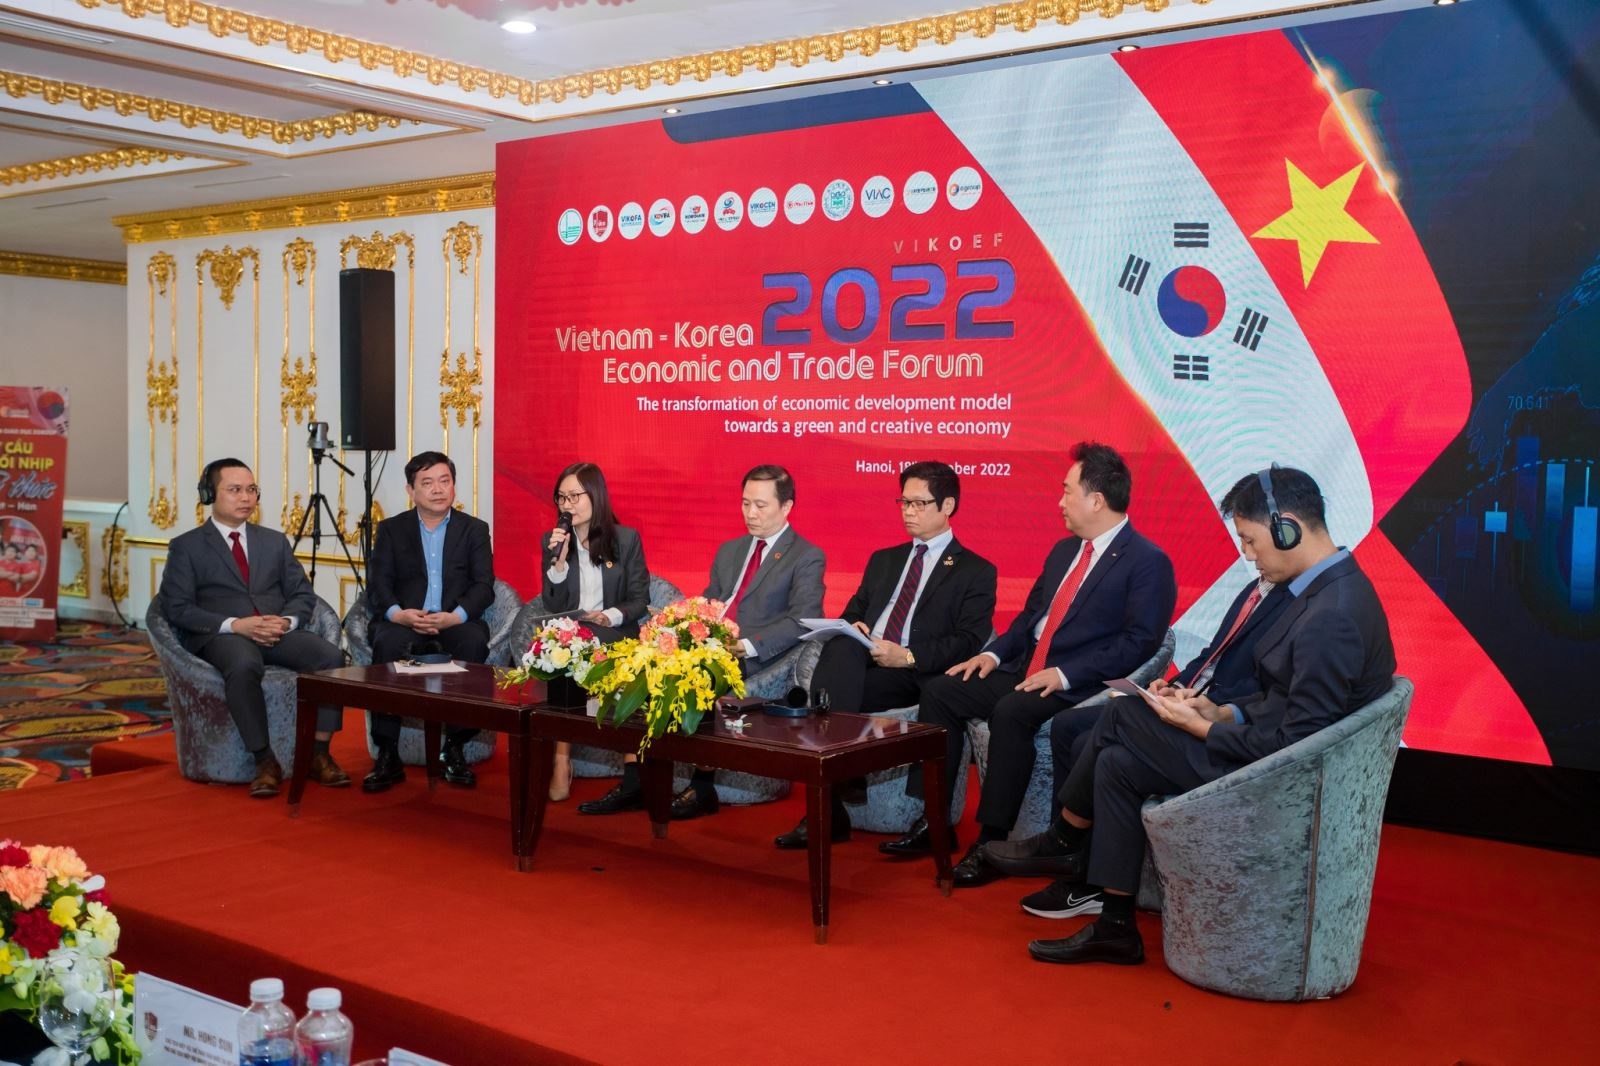 Diễn đàn Kinh tế &Thương mại Việt – Hàn: Từ Kỳ tích sông Hàn hướng đến Kỳ tích sông Hồng